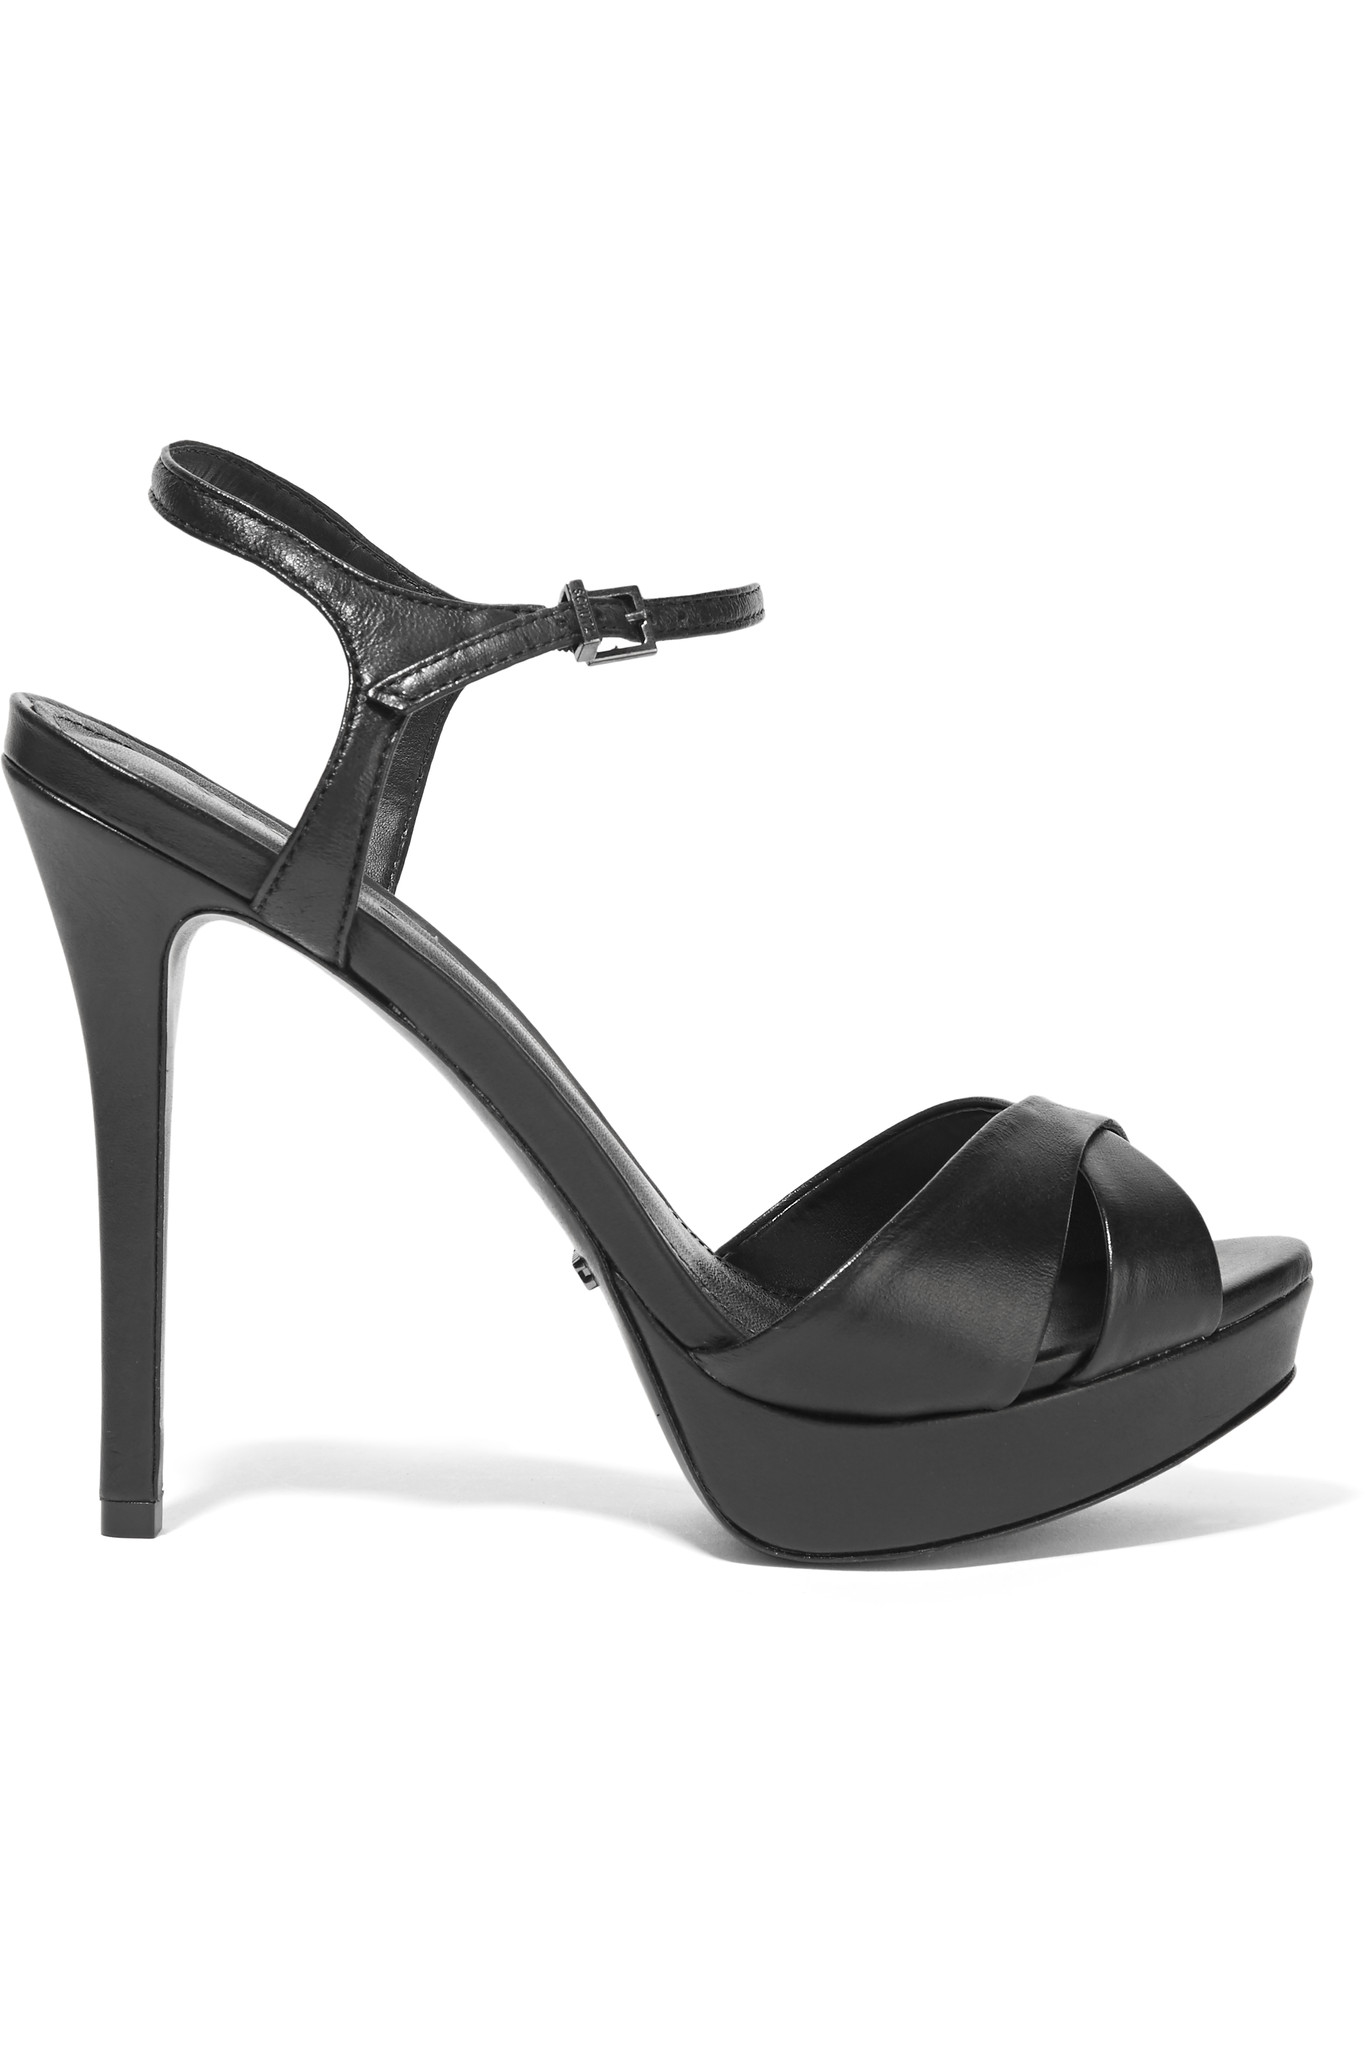 Schutz Leather Platform Sandals in Black | Lyst